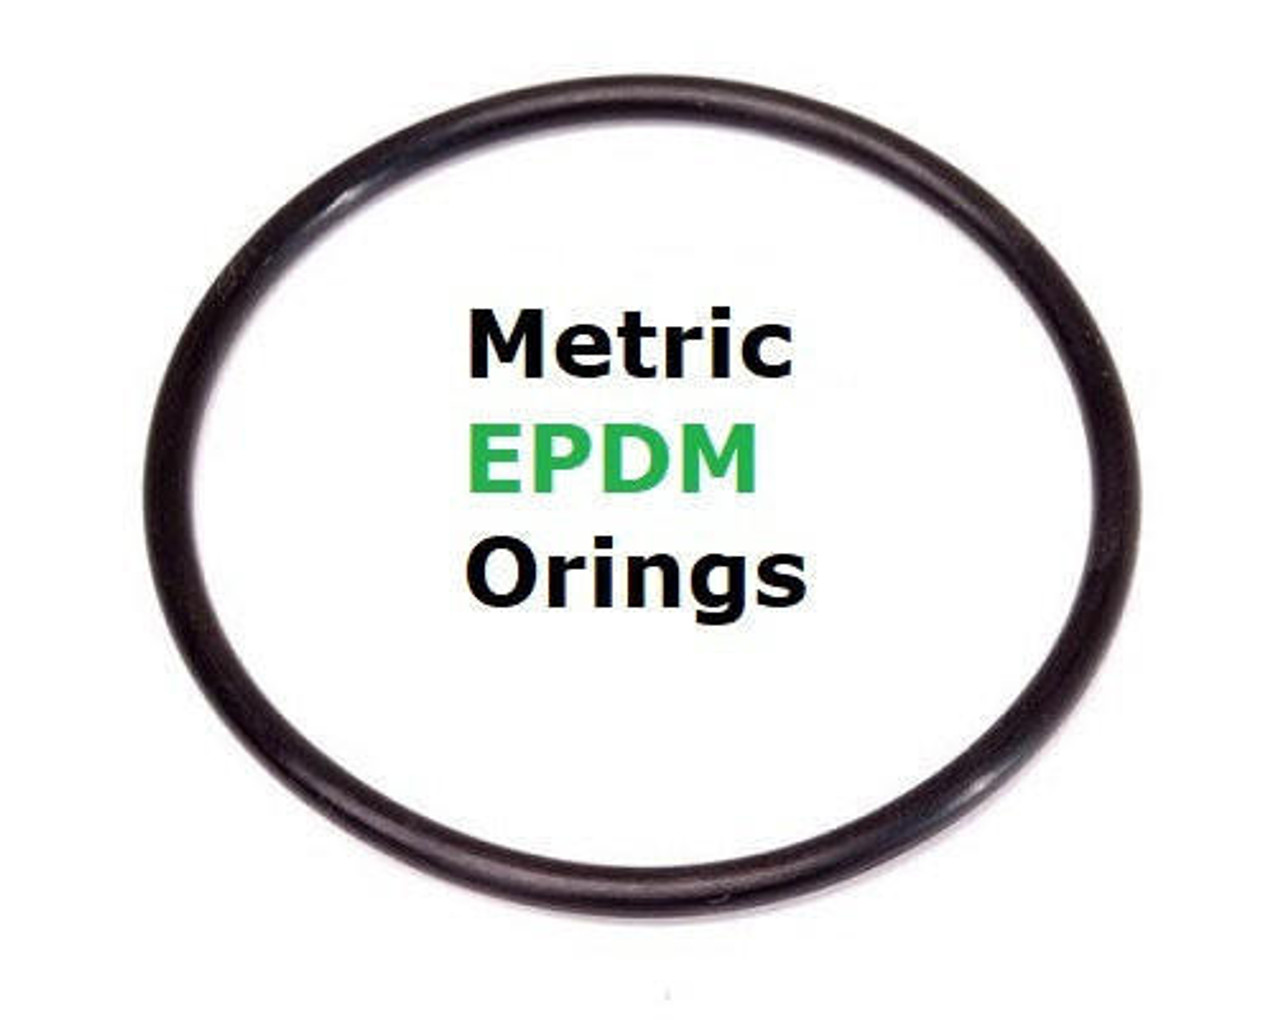 Metric EPDM 70  Orings  .75 x 1mm FDA  Minimum 20 pcs